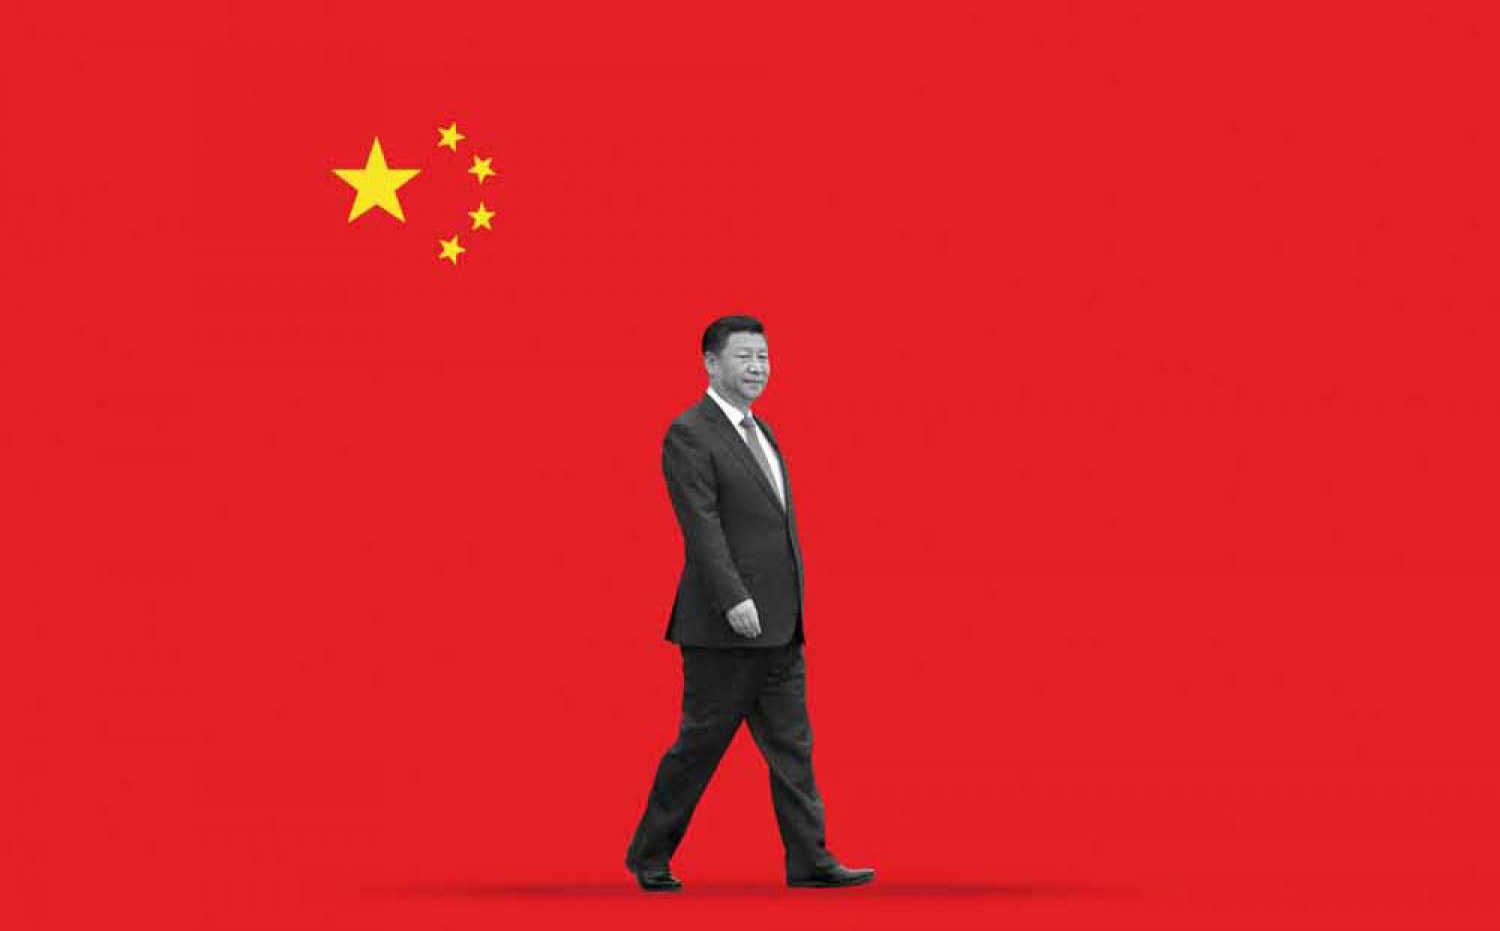 Trung Quốc bất ngờ thành "cỗ xe tuột xích": Lên đỉnh bao năm giờ bỗng yếu đuối lạ kỳ!